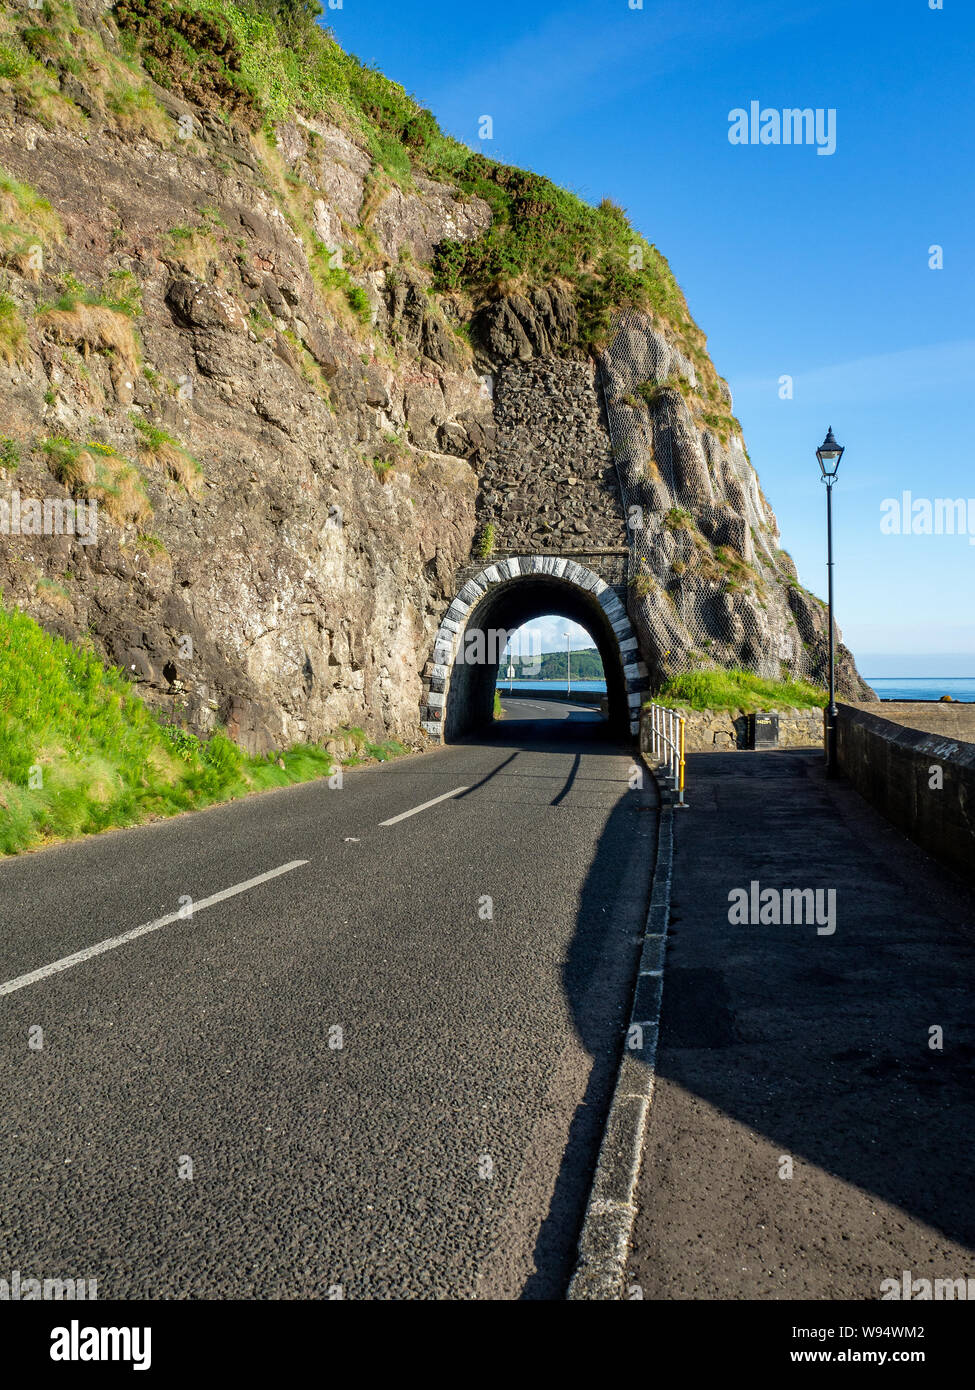 Arco negro túnel y Causeway Ruta Costera. Carretera Escénica a lo largo de la costa oriental del Condado de Antrim, Irlanda del Norte, Reino Unido. Vista aérea de la luz del amanecer Foto de stock